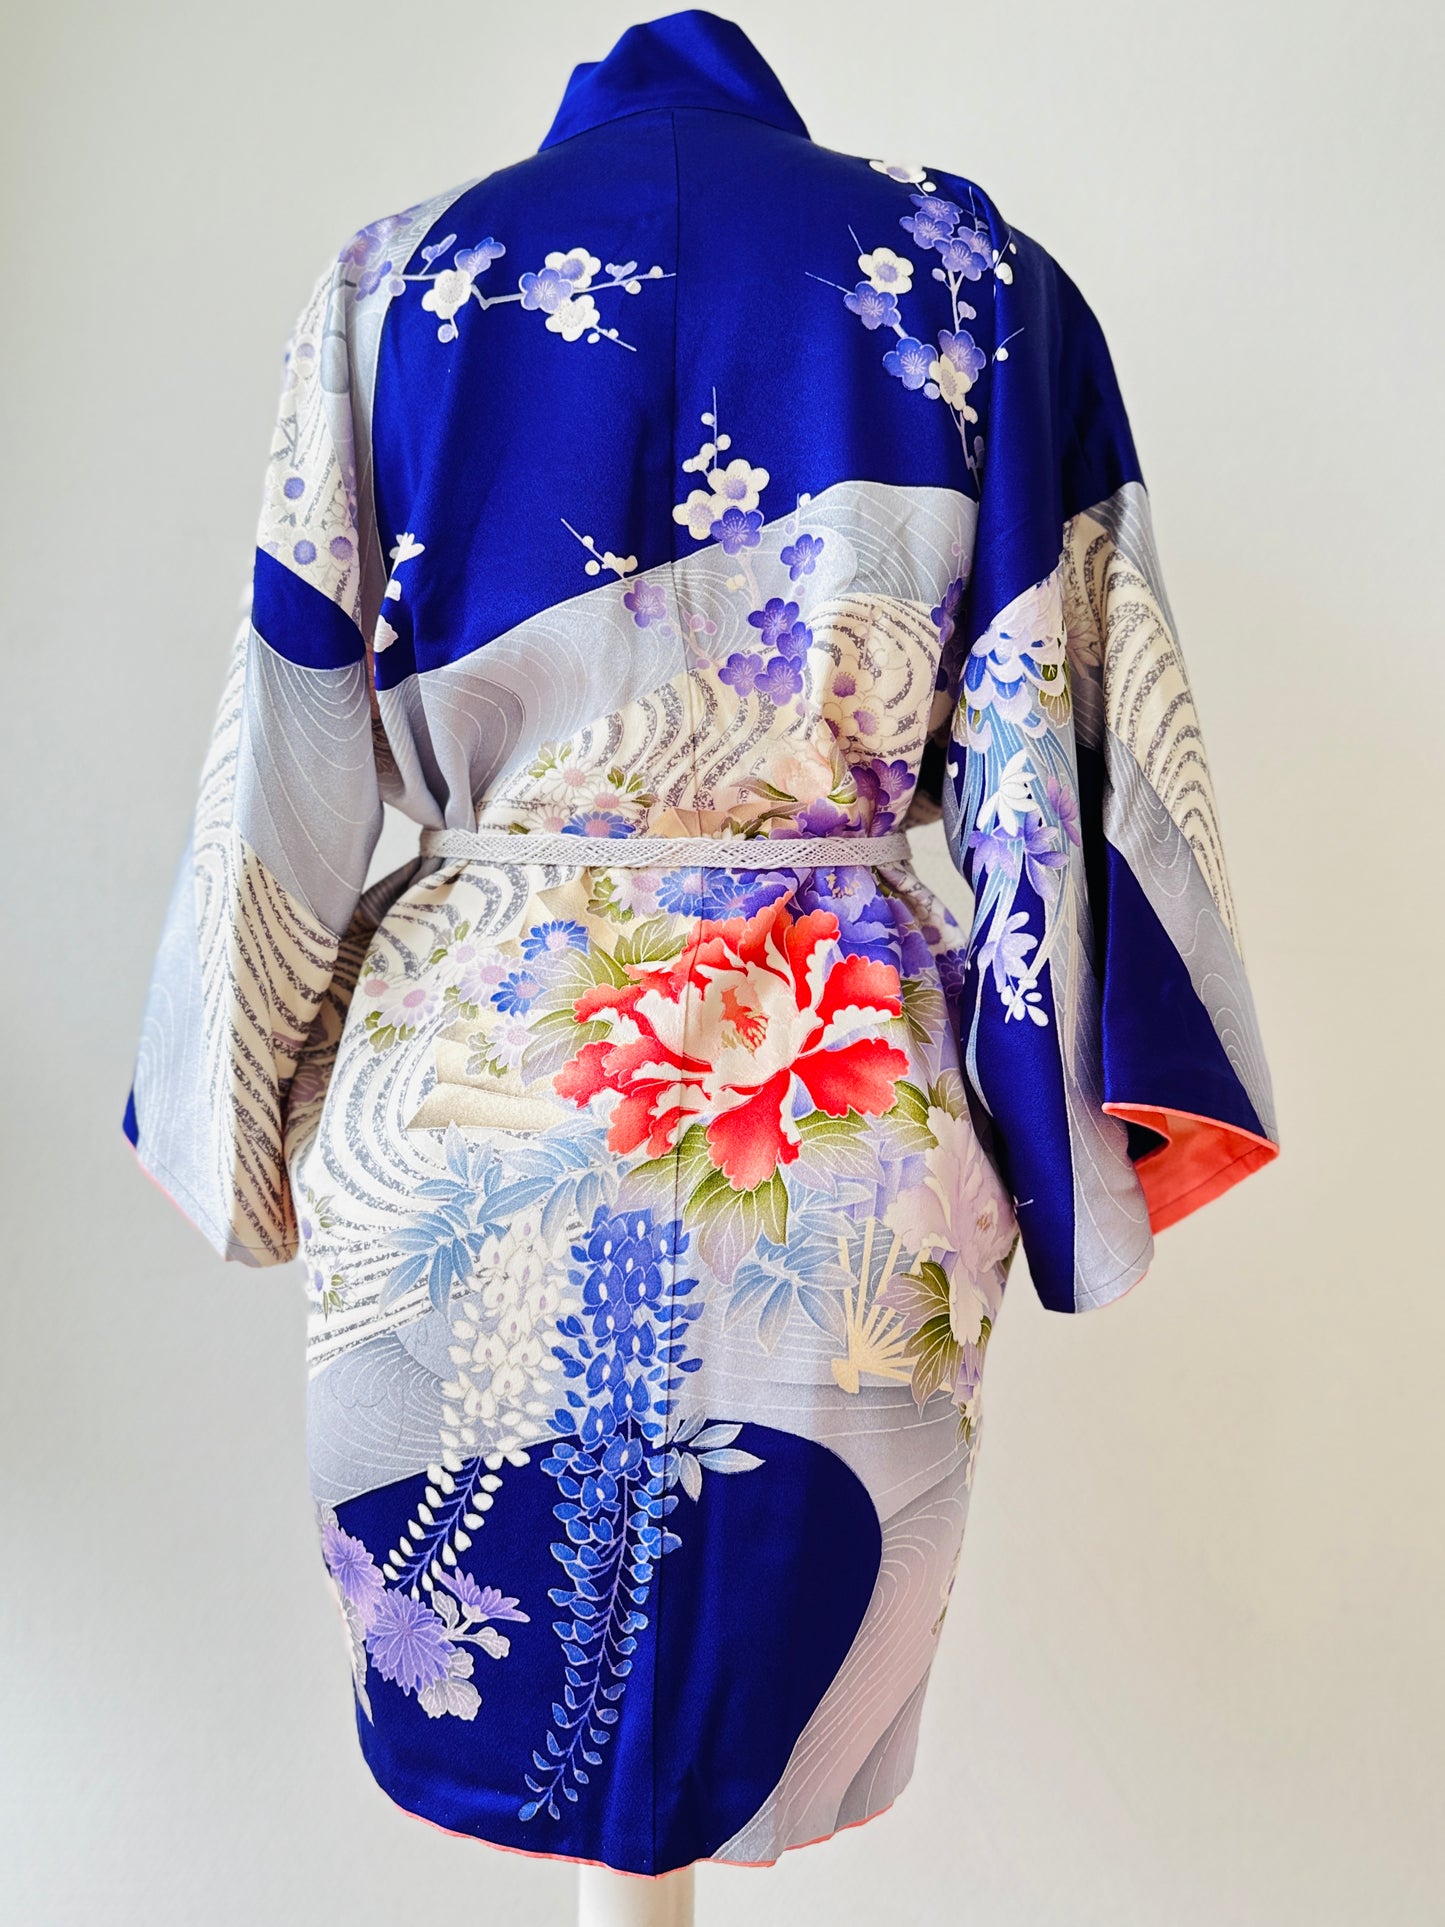 【Purpur, große Blumen und Wasser】 Happi Jacke ＜ Ausgezeichnet ・ Seide ＞ Für Männer, für Frauen, japanische Kimono, Japan Unisexesische Kleidung, Unisex, japanische Geschenke, Originaldesigns